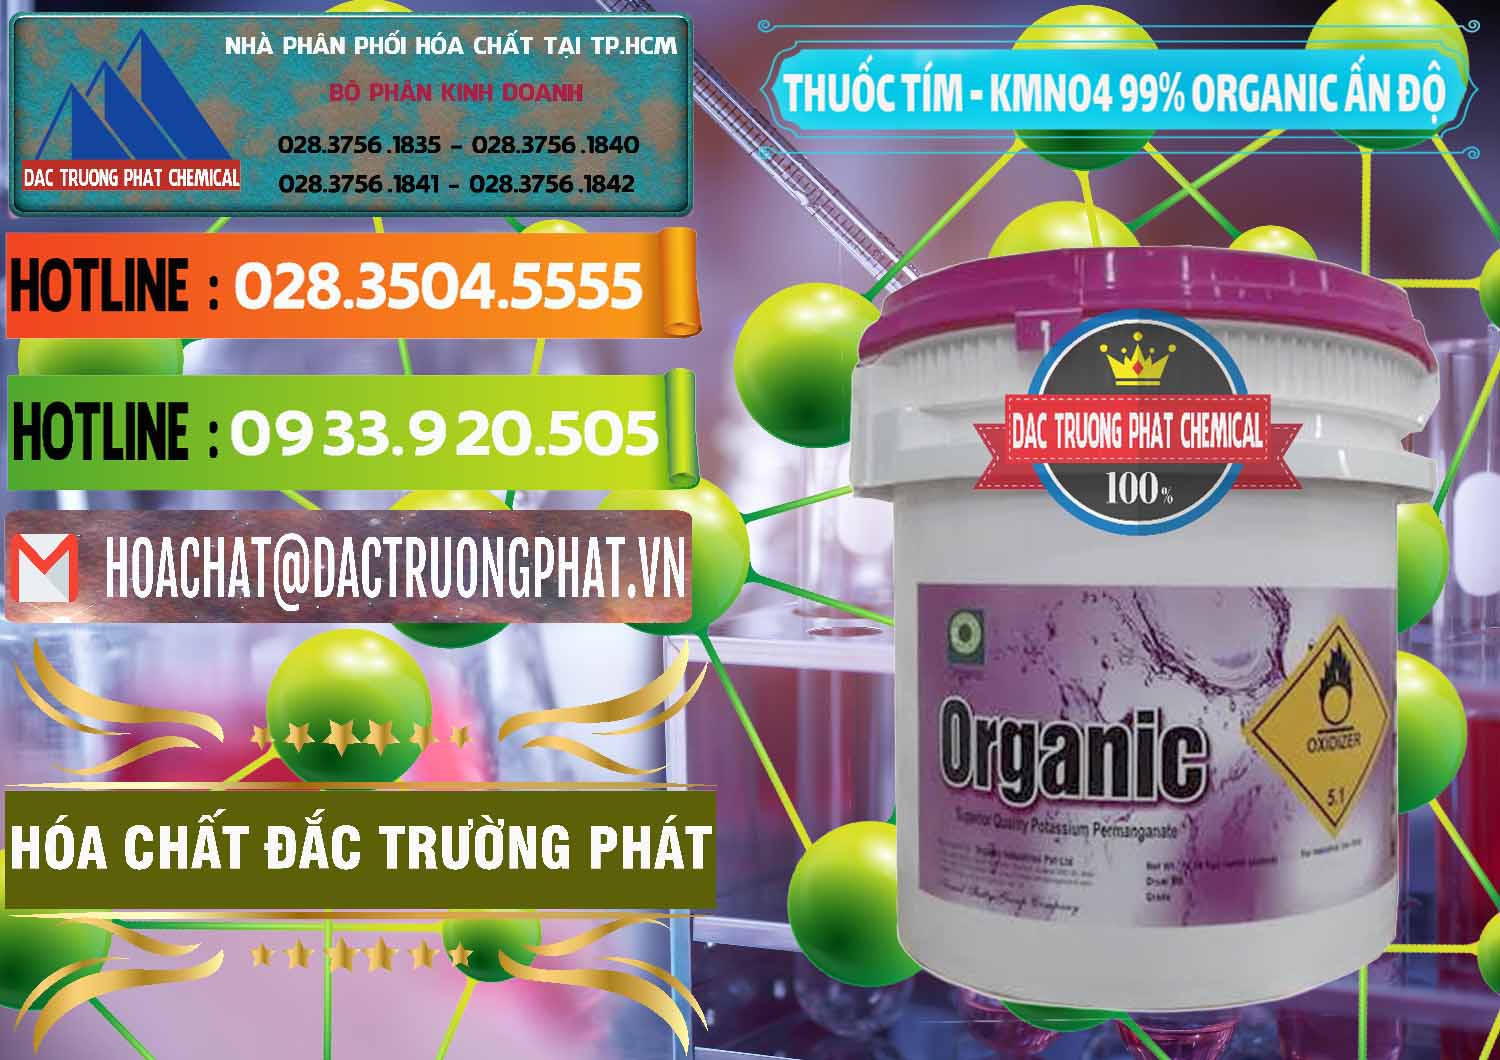 Nơi chuyên kinh doanh _ bán Thuốc Tím - KMNO4 99% Organic Ấn Độ India - 0216 - Đơn vị nhập khẩu - phân phối hóa chất tại TP.HCM - cungcaphoachat.com.vn